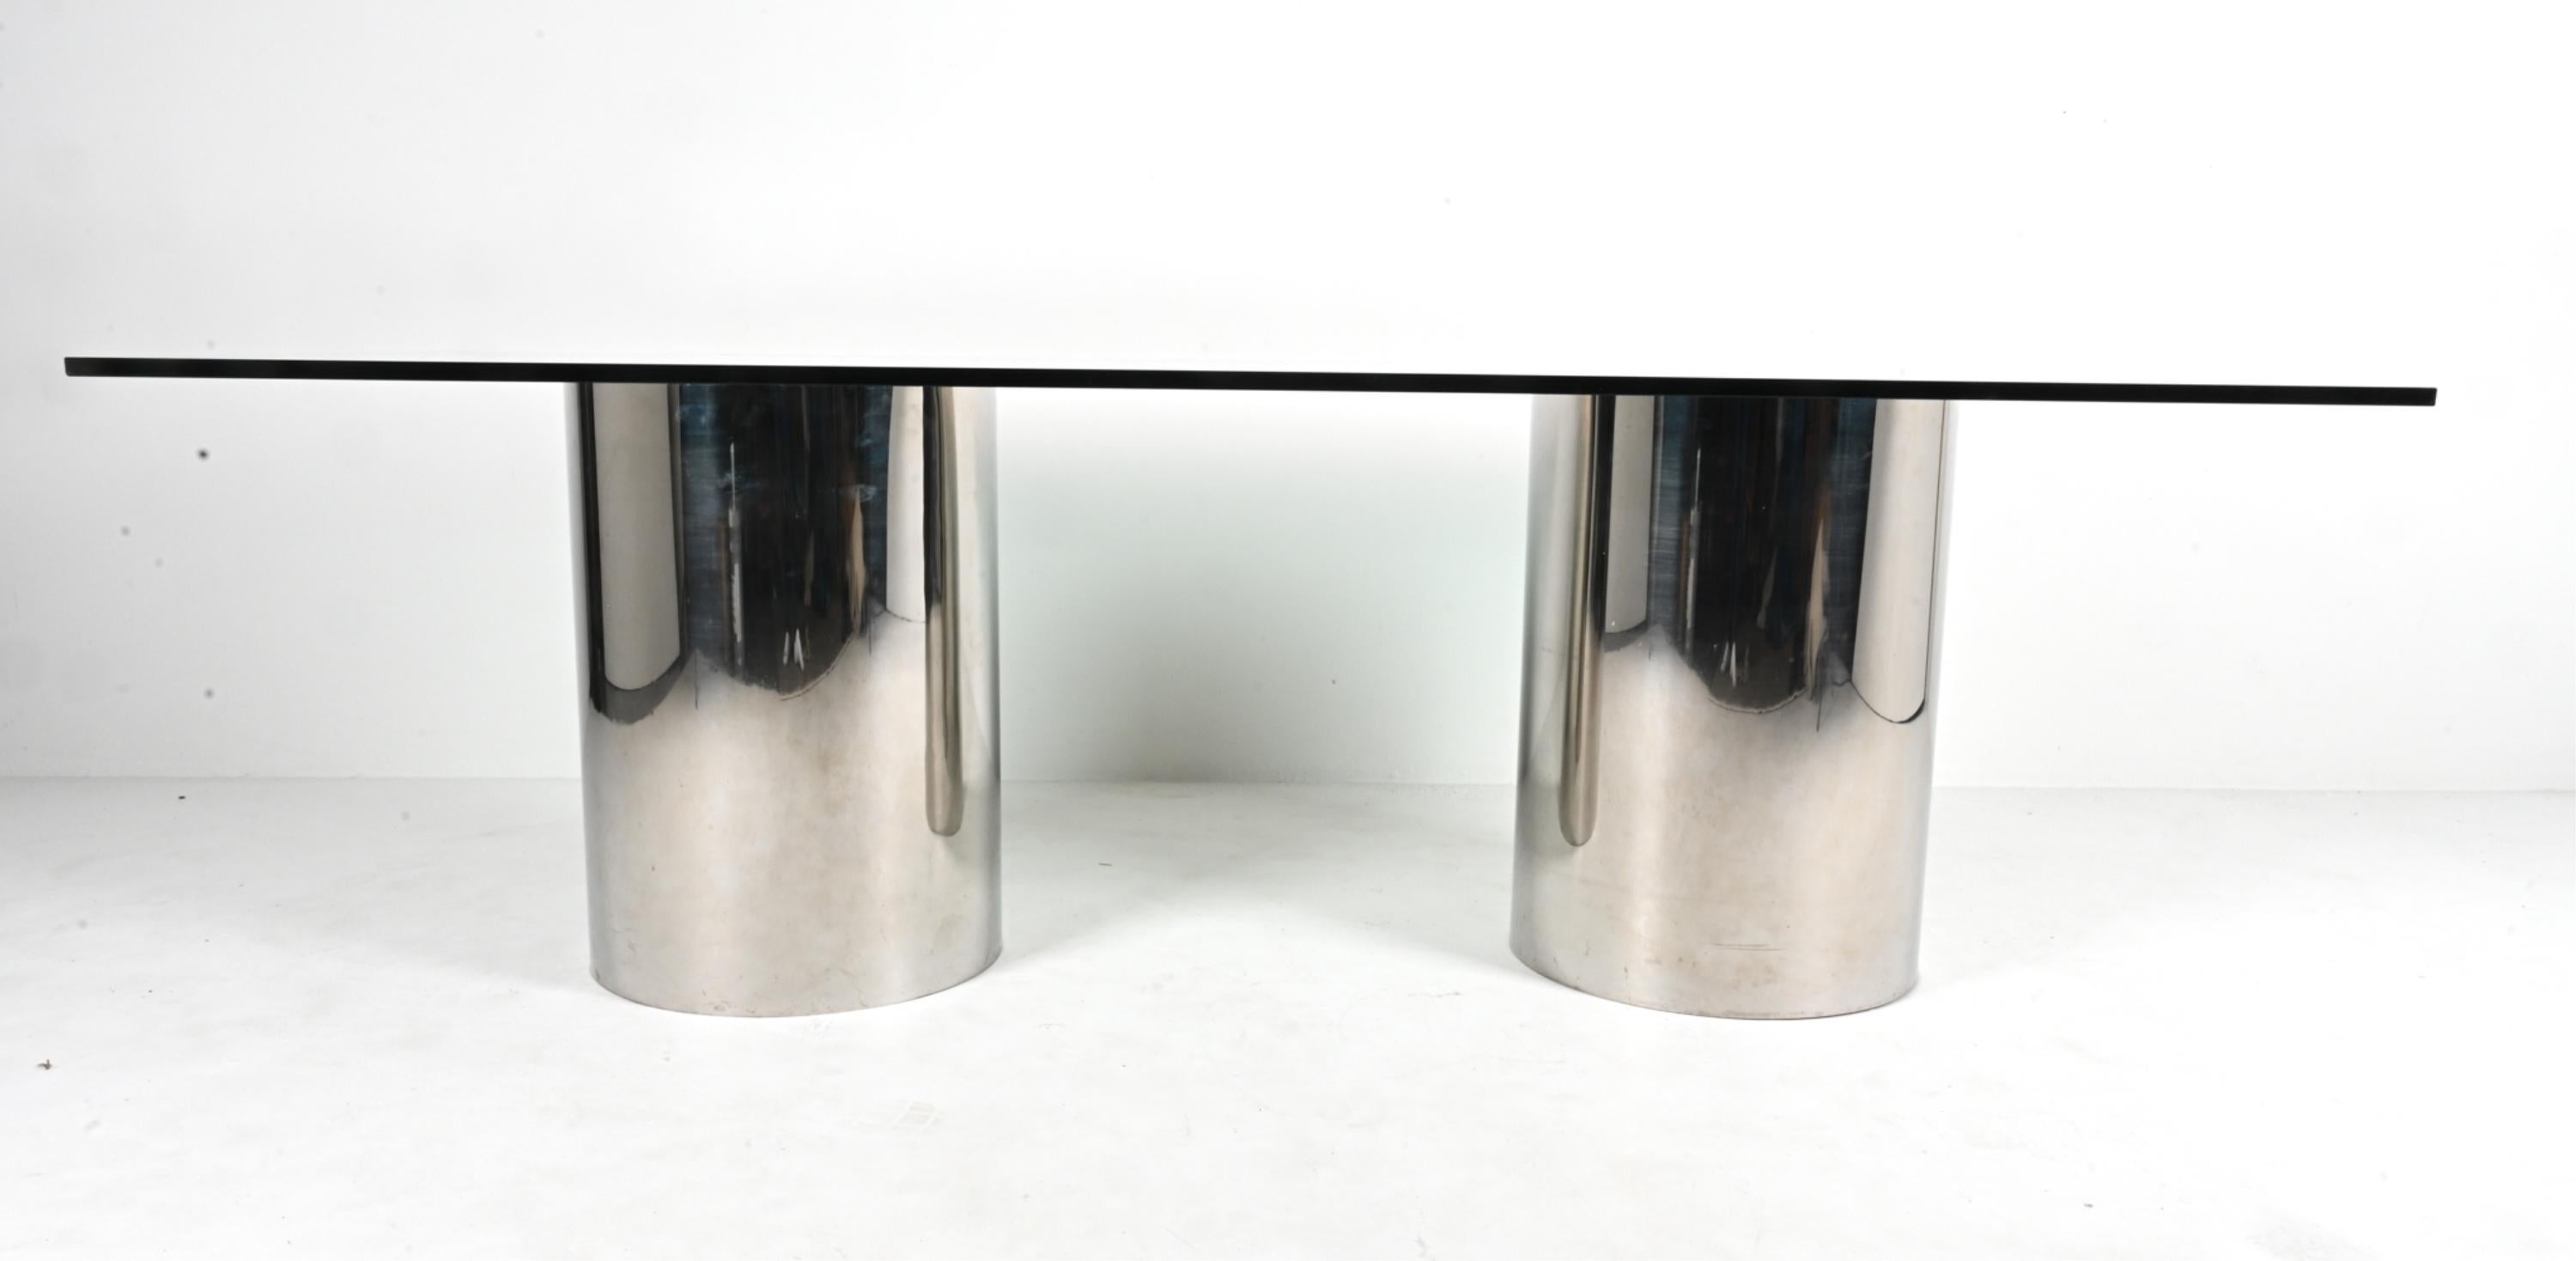 Dieser seltene, dokumentierte Esstisch aus der Serie Drum von Brueton ist ein Beispiel für die Eleganz des modernen Minimalismus. Er hat eine rechteckige Platte aus gehärtetem Glas, die von zwei zylindrischen Sockeln aus robustem Kiefernholz